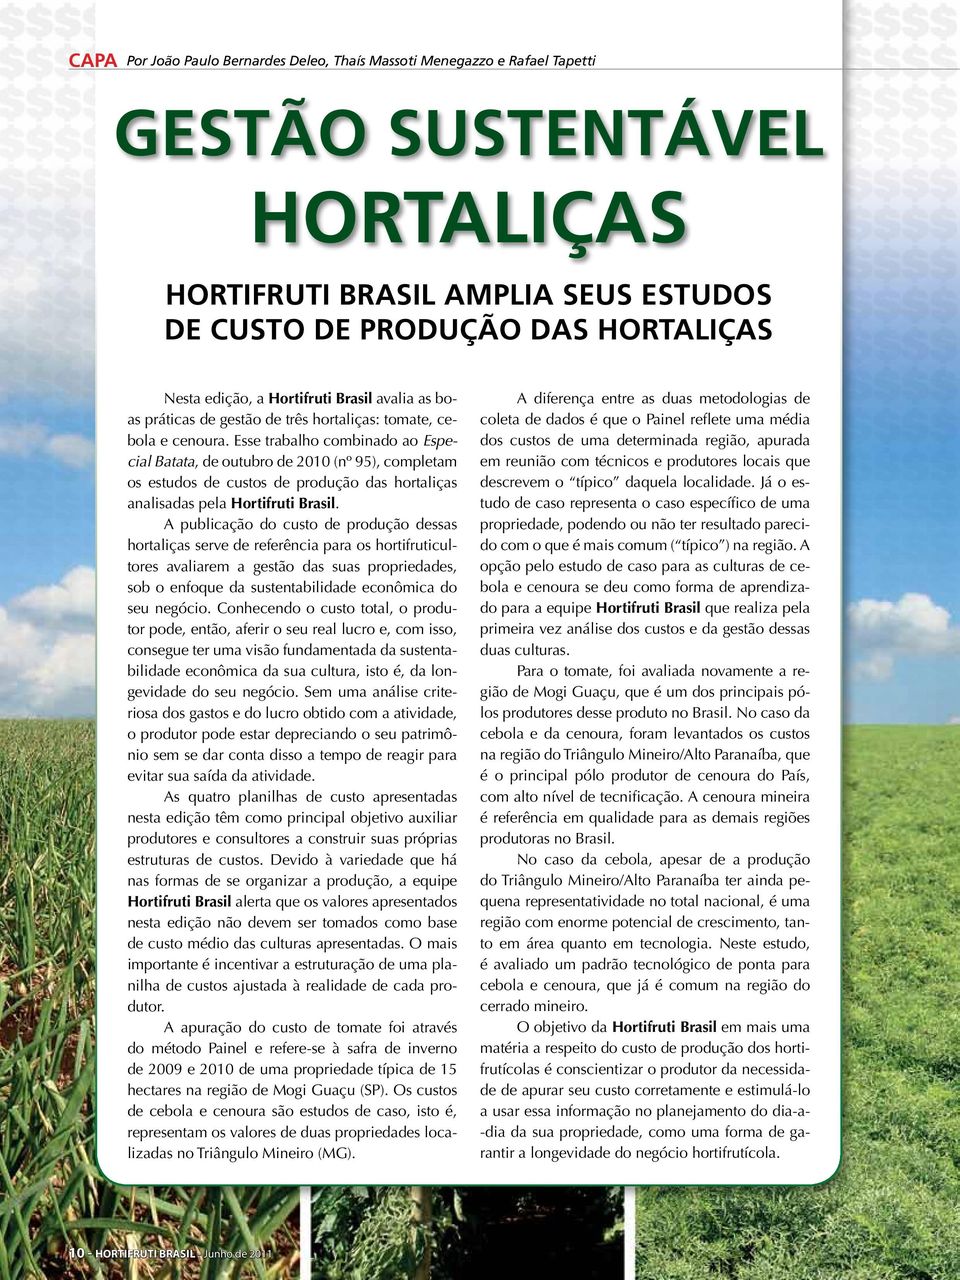 Esse trabalho combinado ao Especial Batata, de outubro de 2010 (nº 95), completam os estudos de custos de produção das hortaliças analisadas pela Hortifruti Brasil.